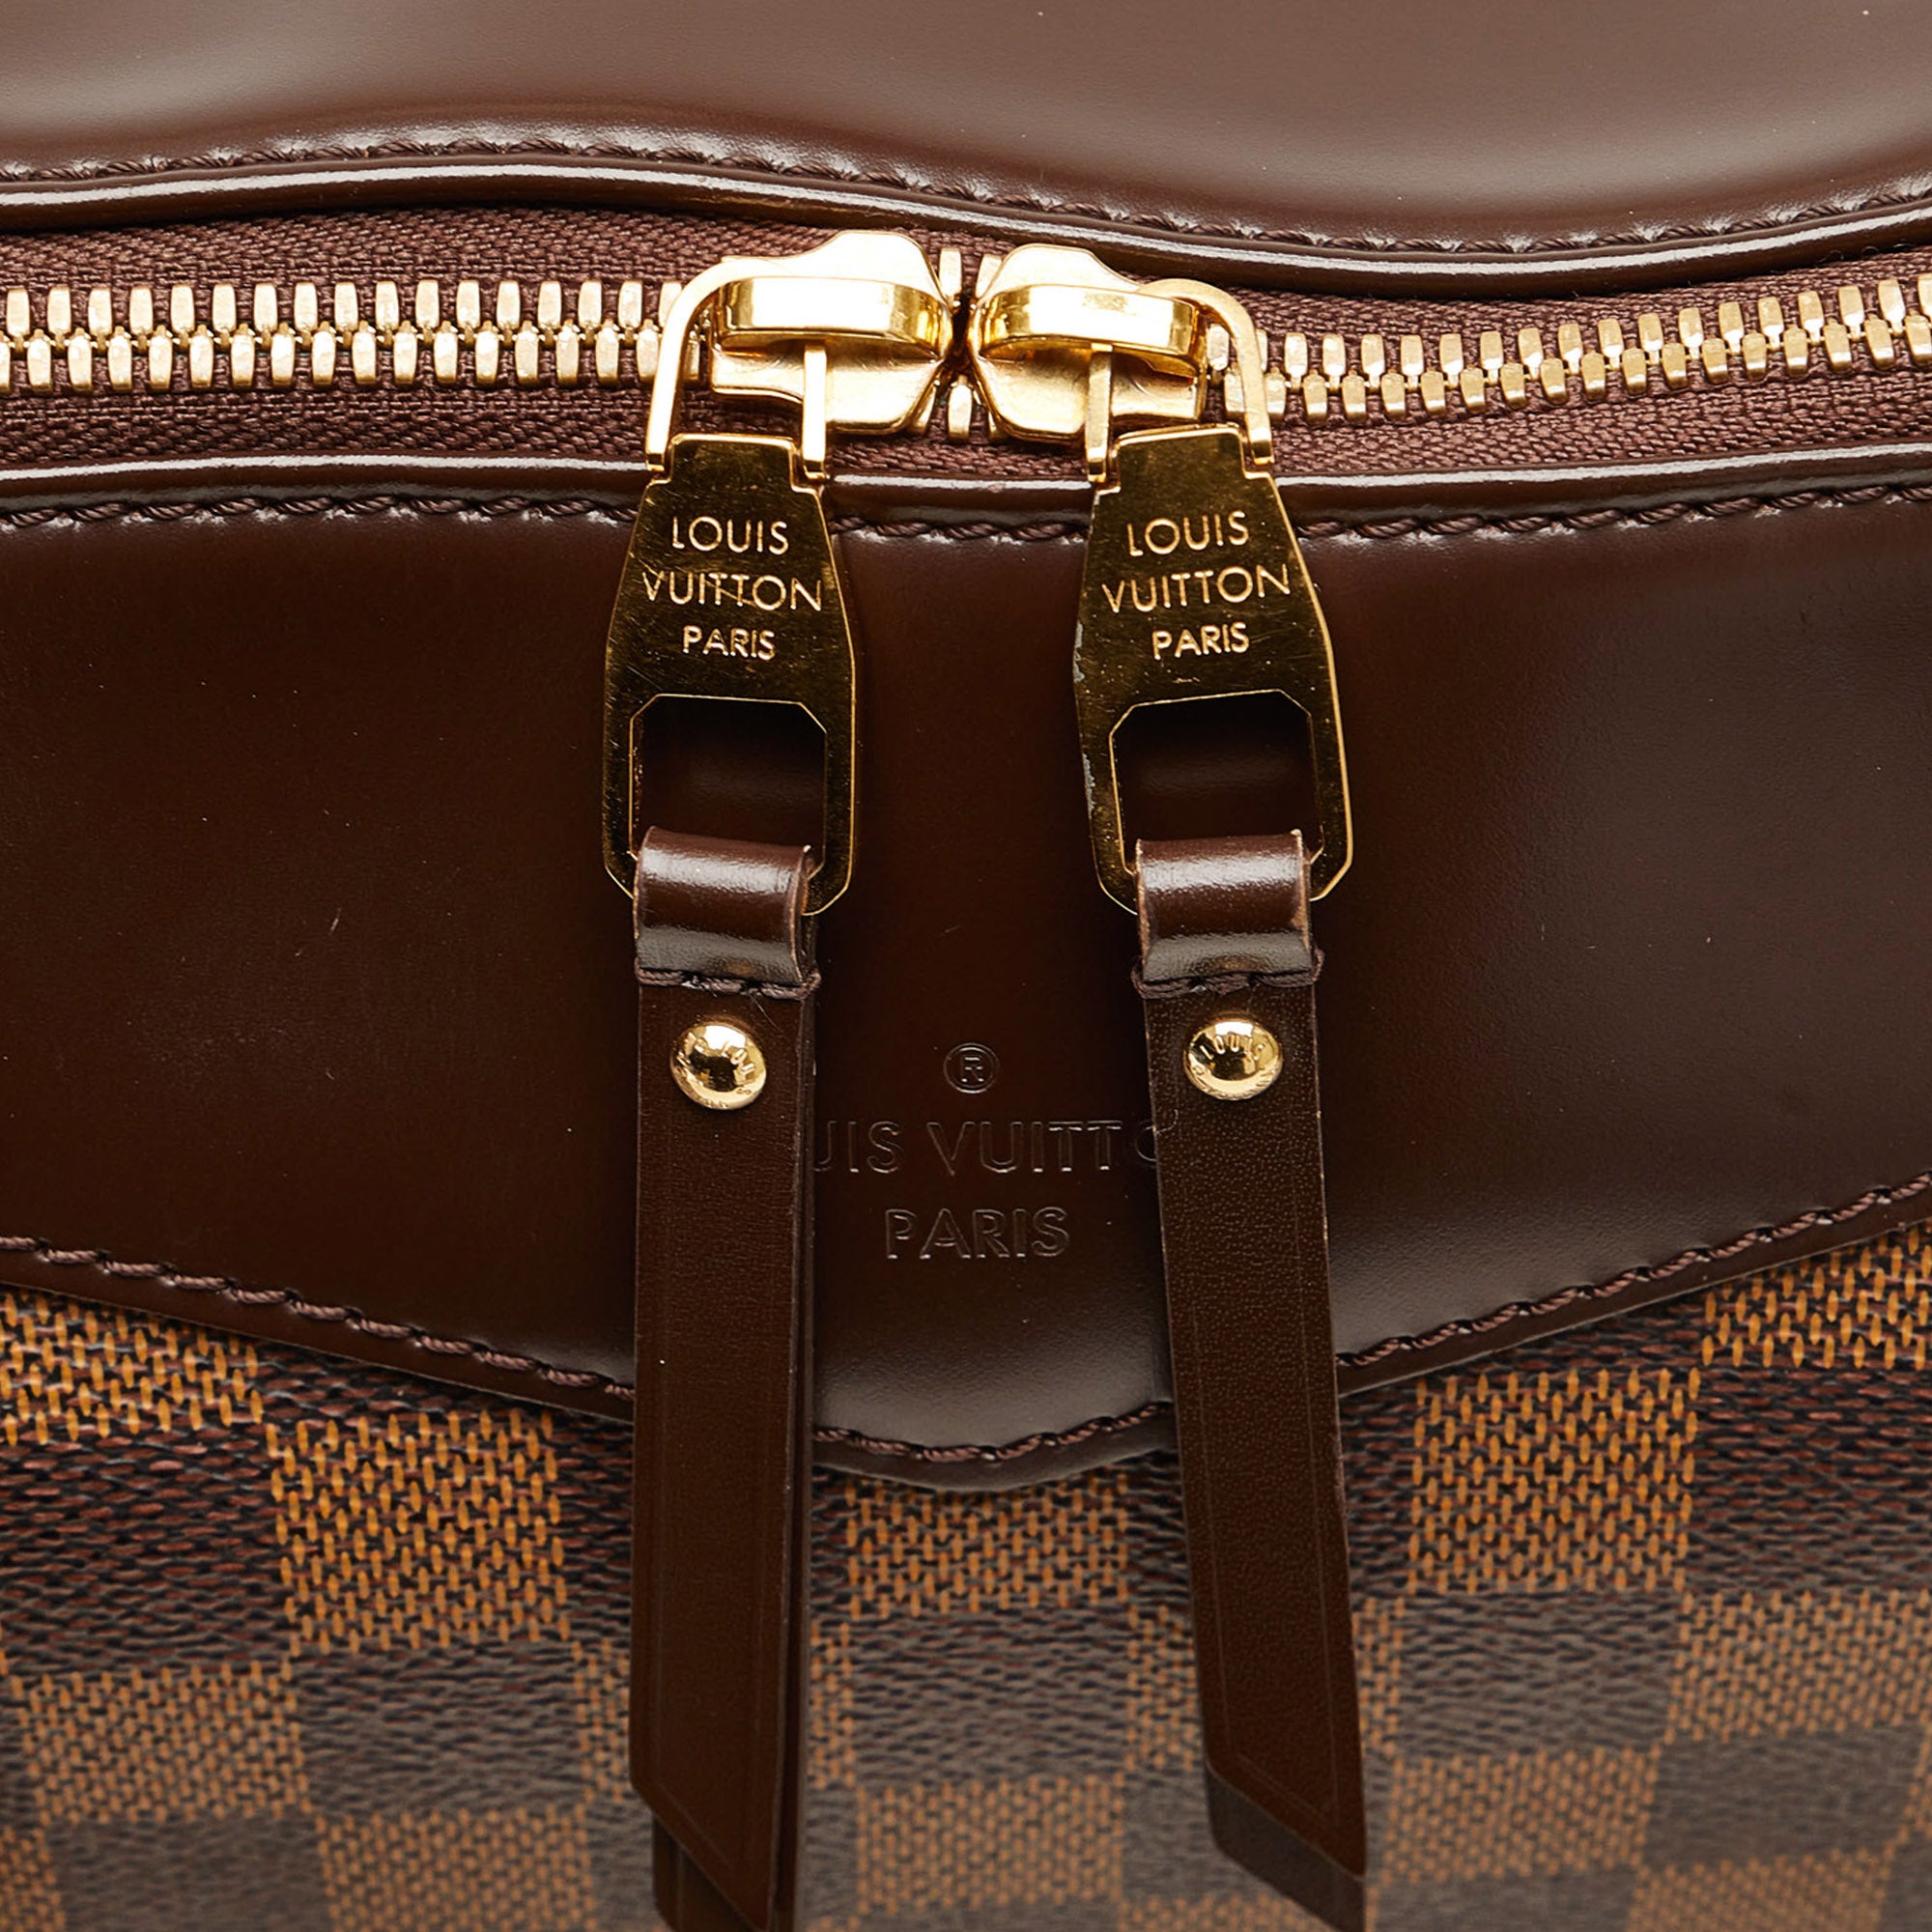 A Damier Eole 50 suitcase, Louis Vuitton. Features Damier leather